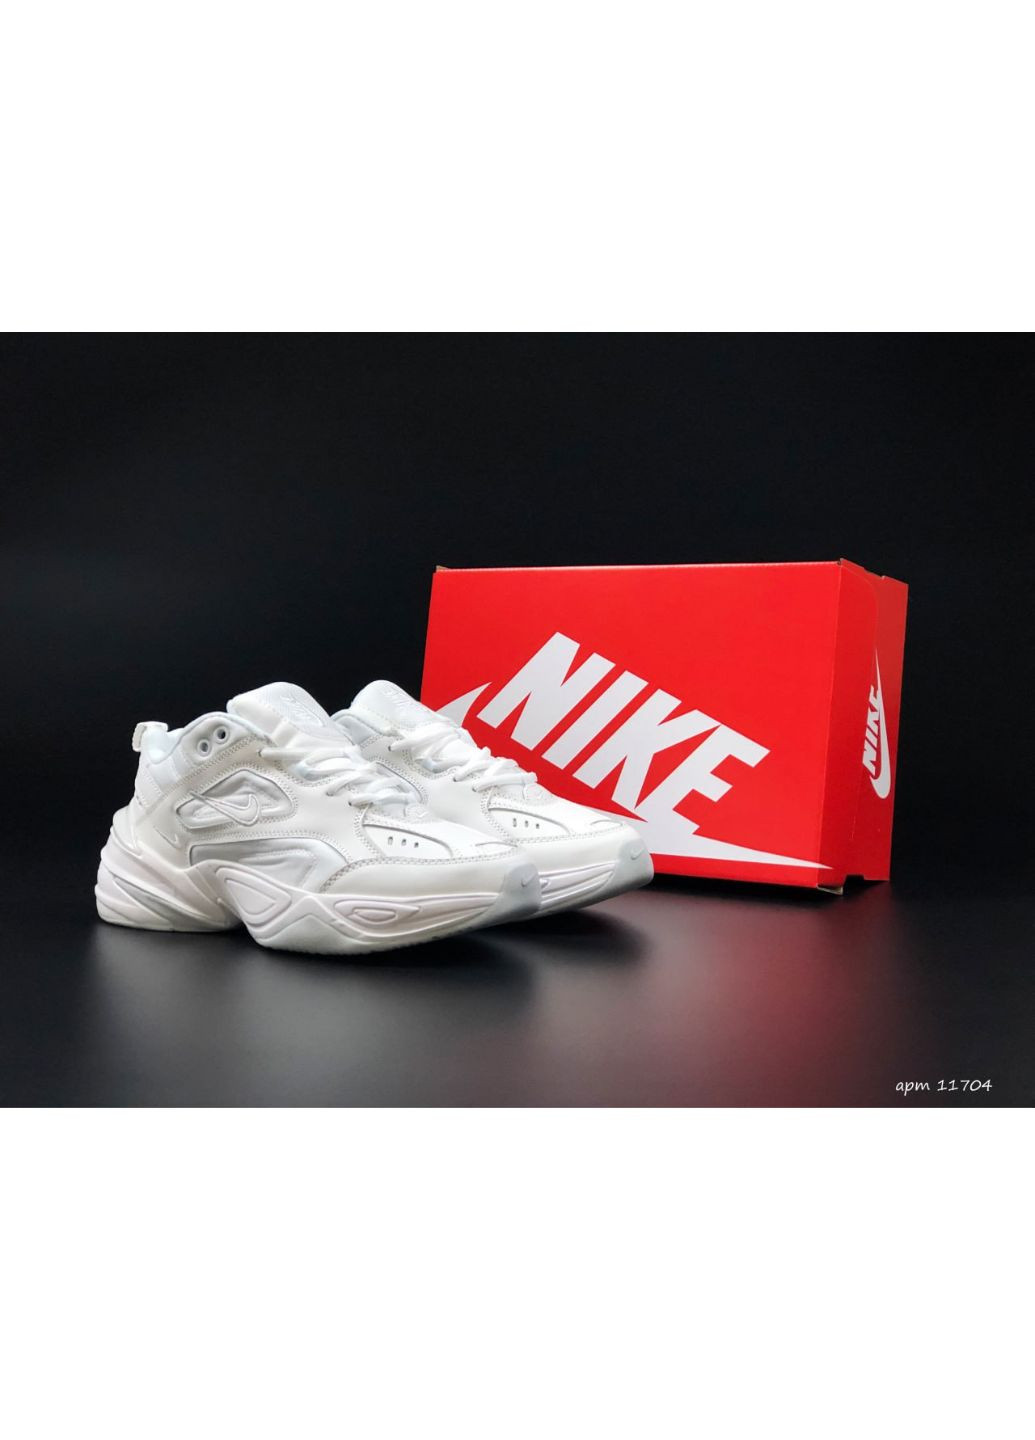 Білі Осінні чоловічі кросівки білі «no name» Nike M2k Tekno